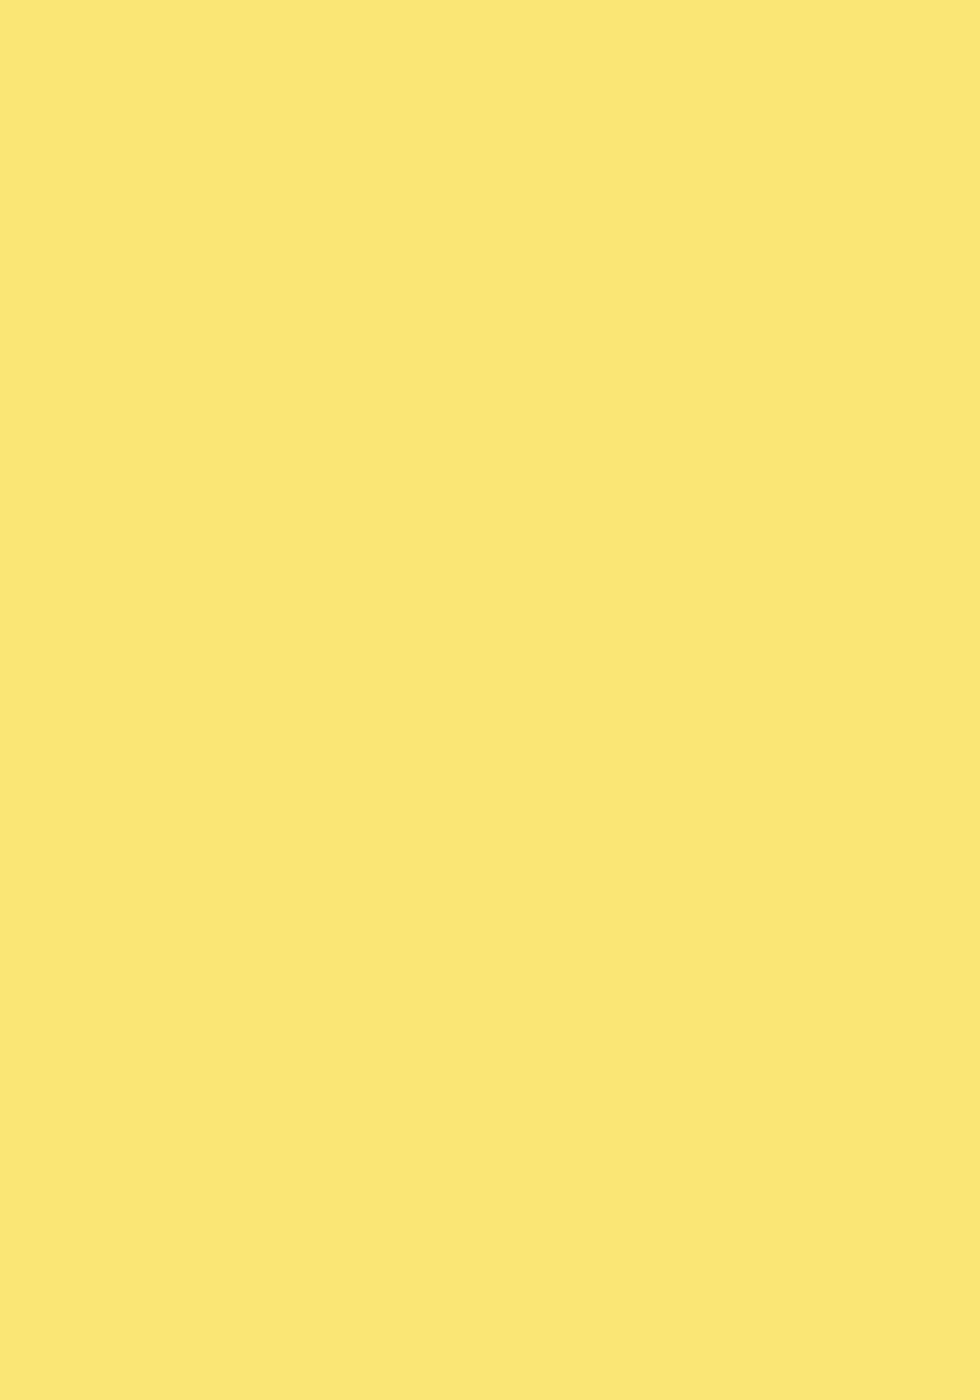 BC sunshine yellow 034